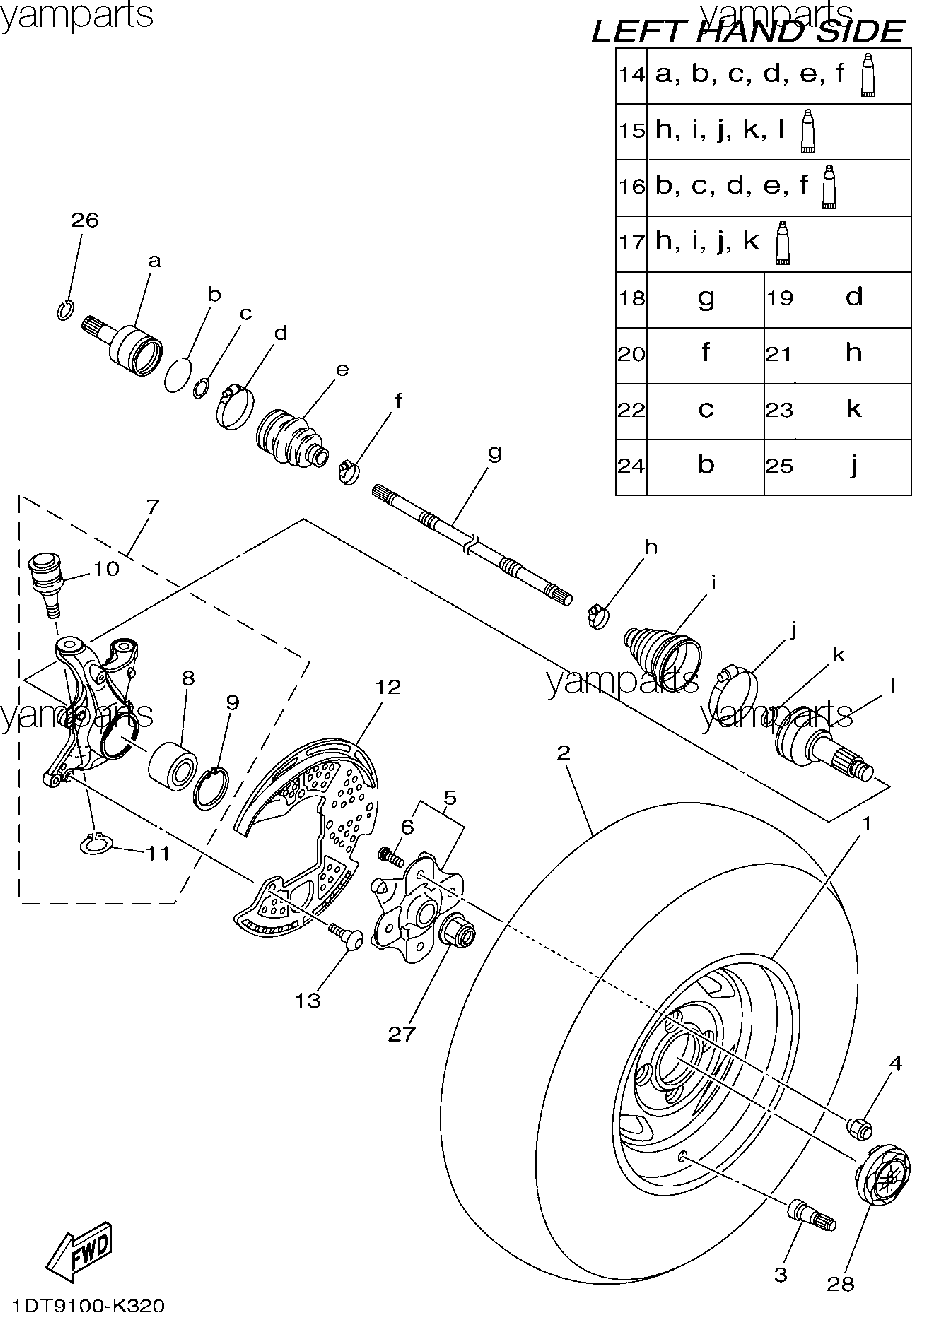 Передние левые привод и колесо